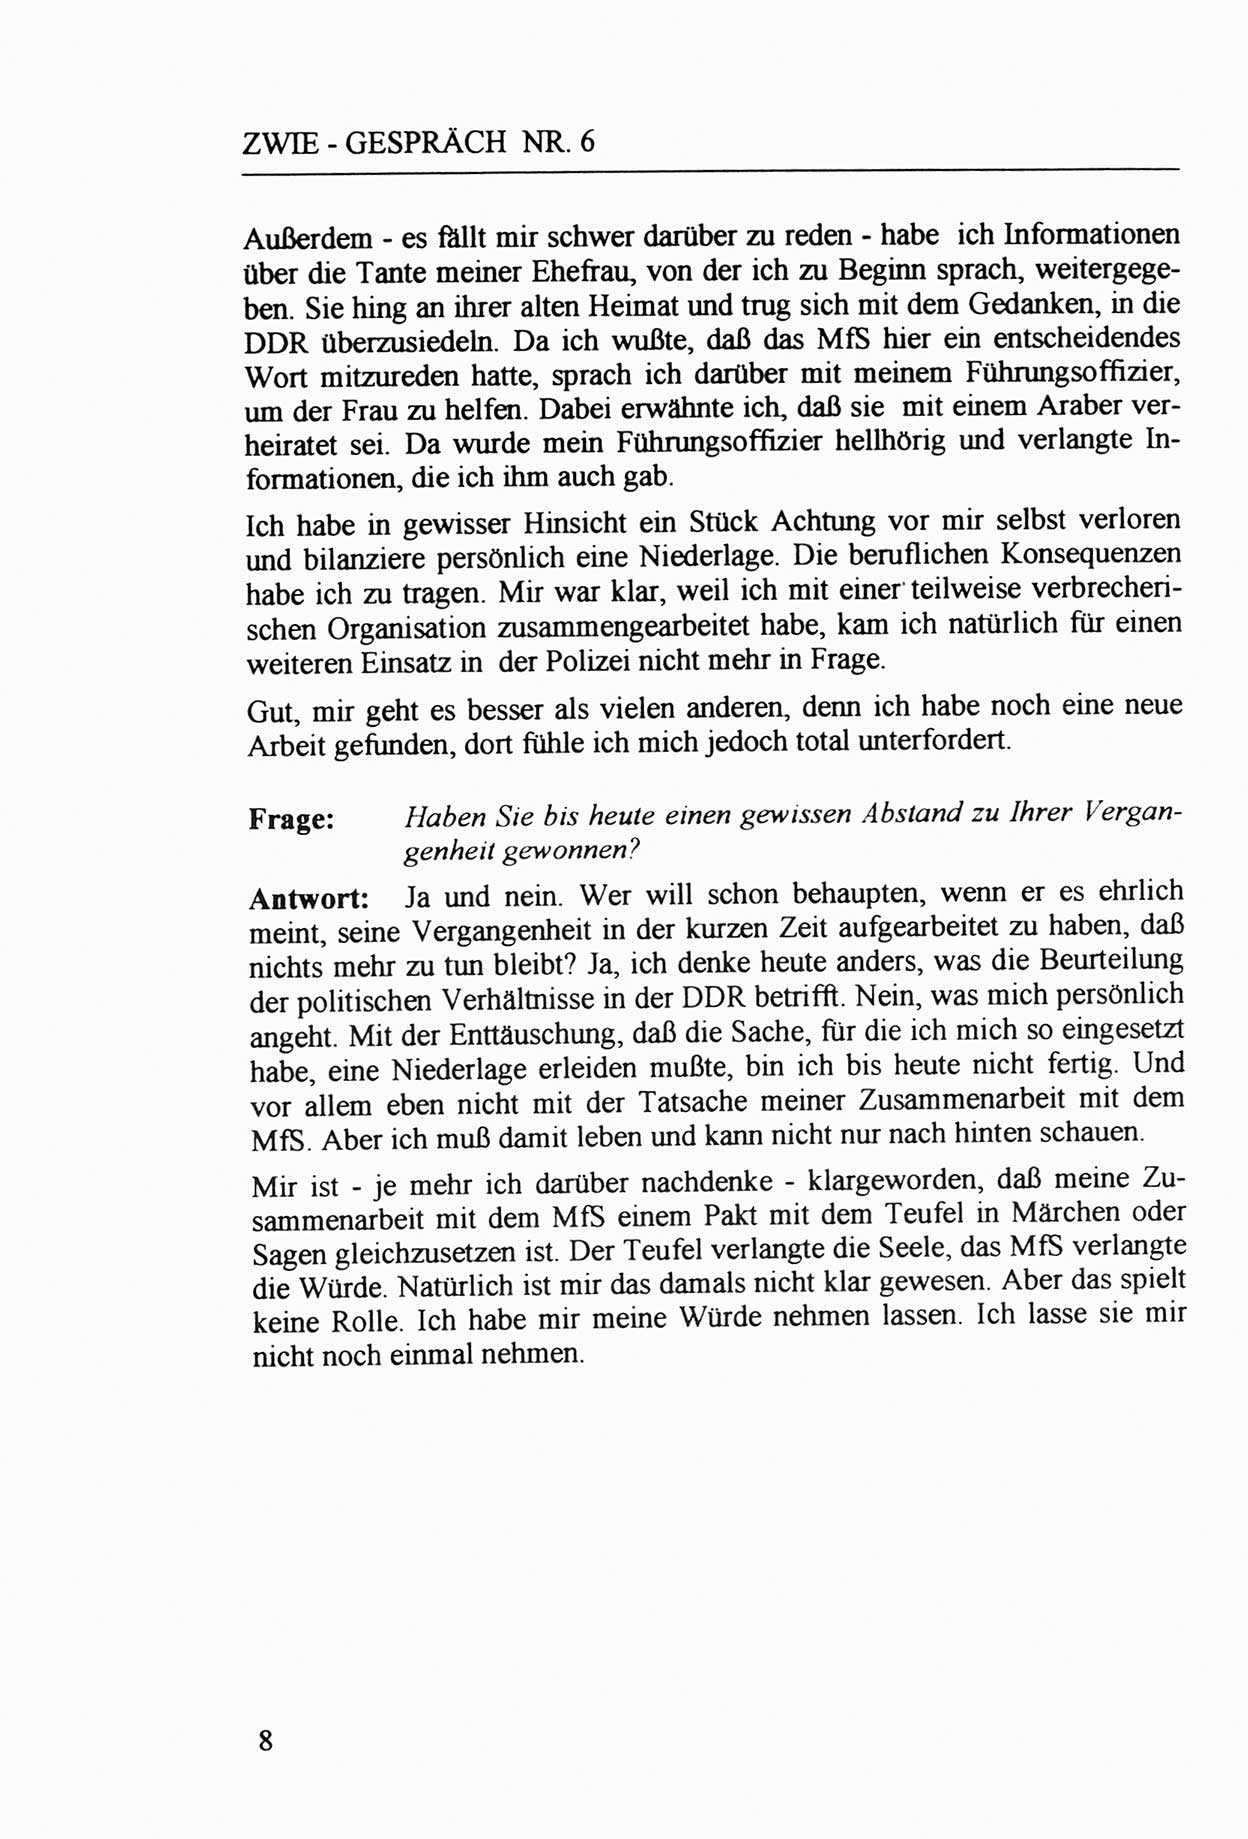 Zwie-Gespräch, Beiträge zur Aufarbeitung der Staatssicherheits-Vergangenheit [Deutsche Demokratische Republik (DDR)], Ausgabe Nr. 6, Berlin 1992, Seite 8 (Zwie-Gespr. Ausg. 6 1992, S. 8)